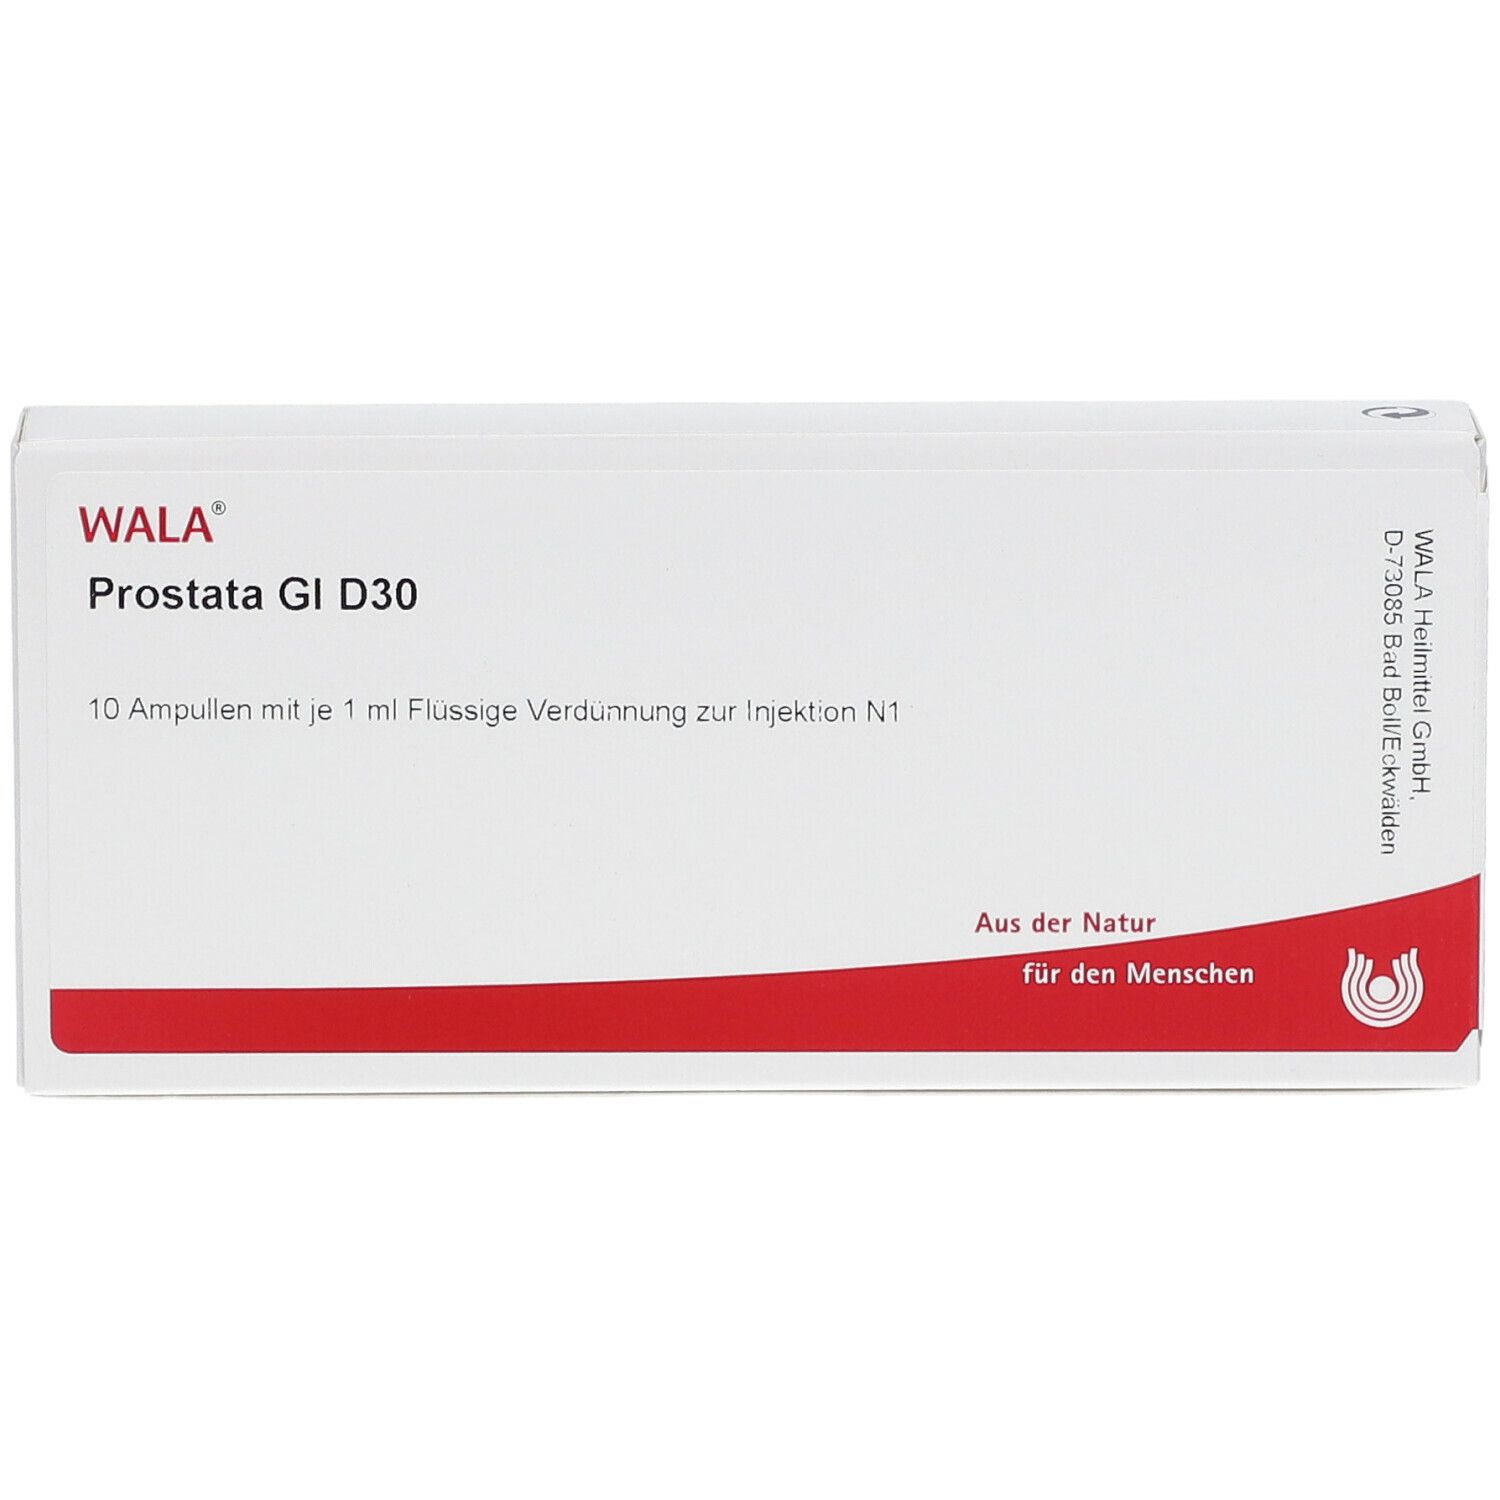 WALA® Prostata Gl D 30